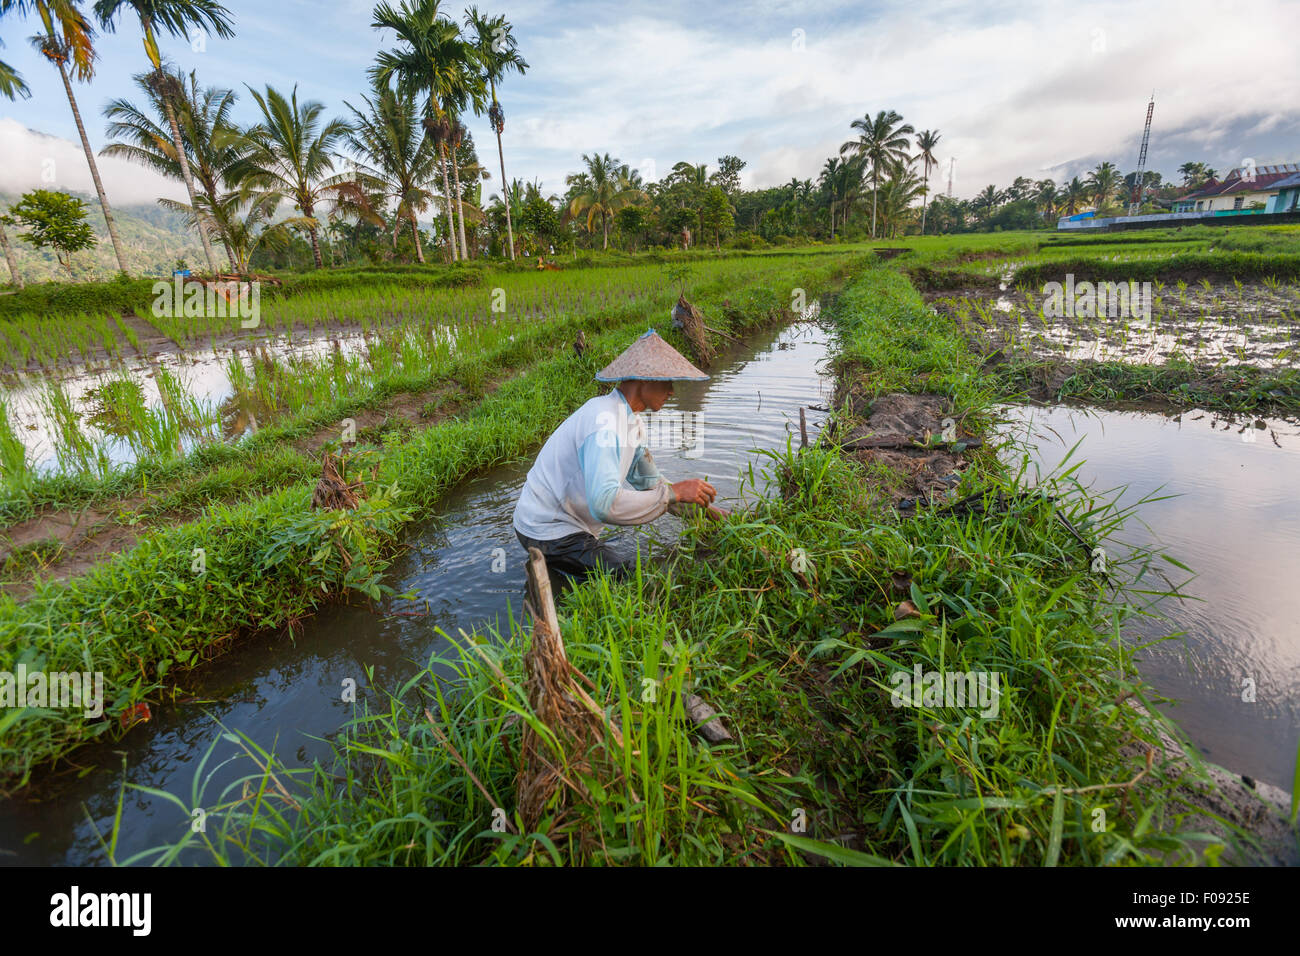 Ein Landwirt, der Wartungsarbeiten am Bewässerungskanal und am Damm auf dem Reisfeld in der Nähe von Lubuk Sikaping, Pasaman, West-Sumatra, Indonesien, durchführt. Stockfoto